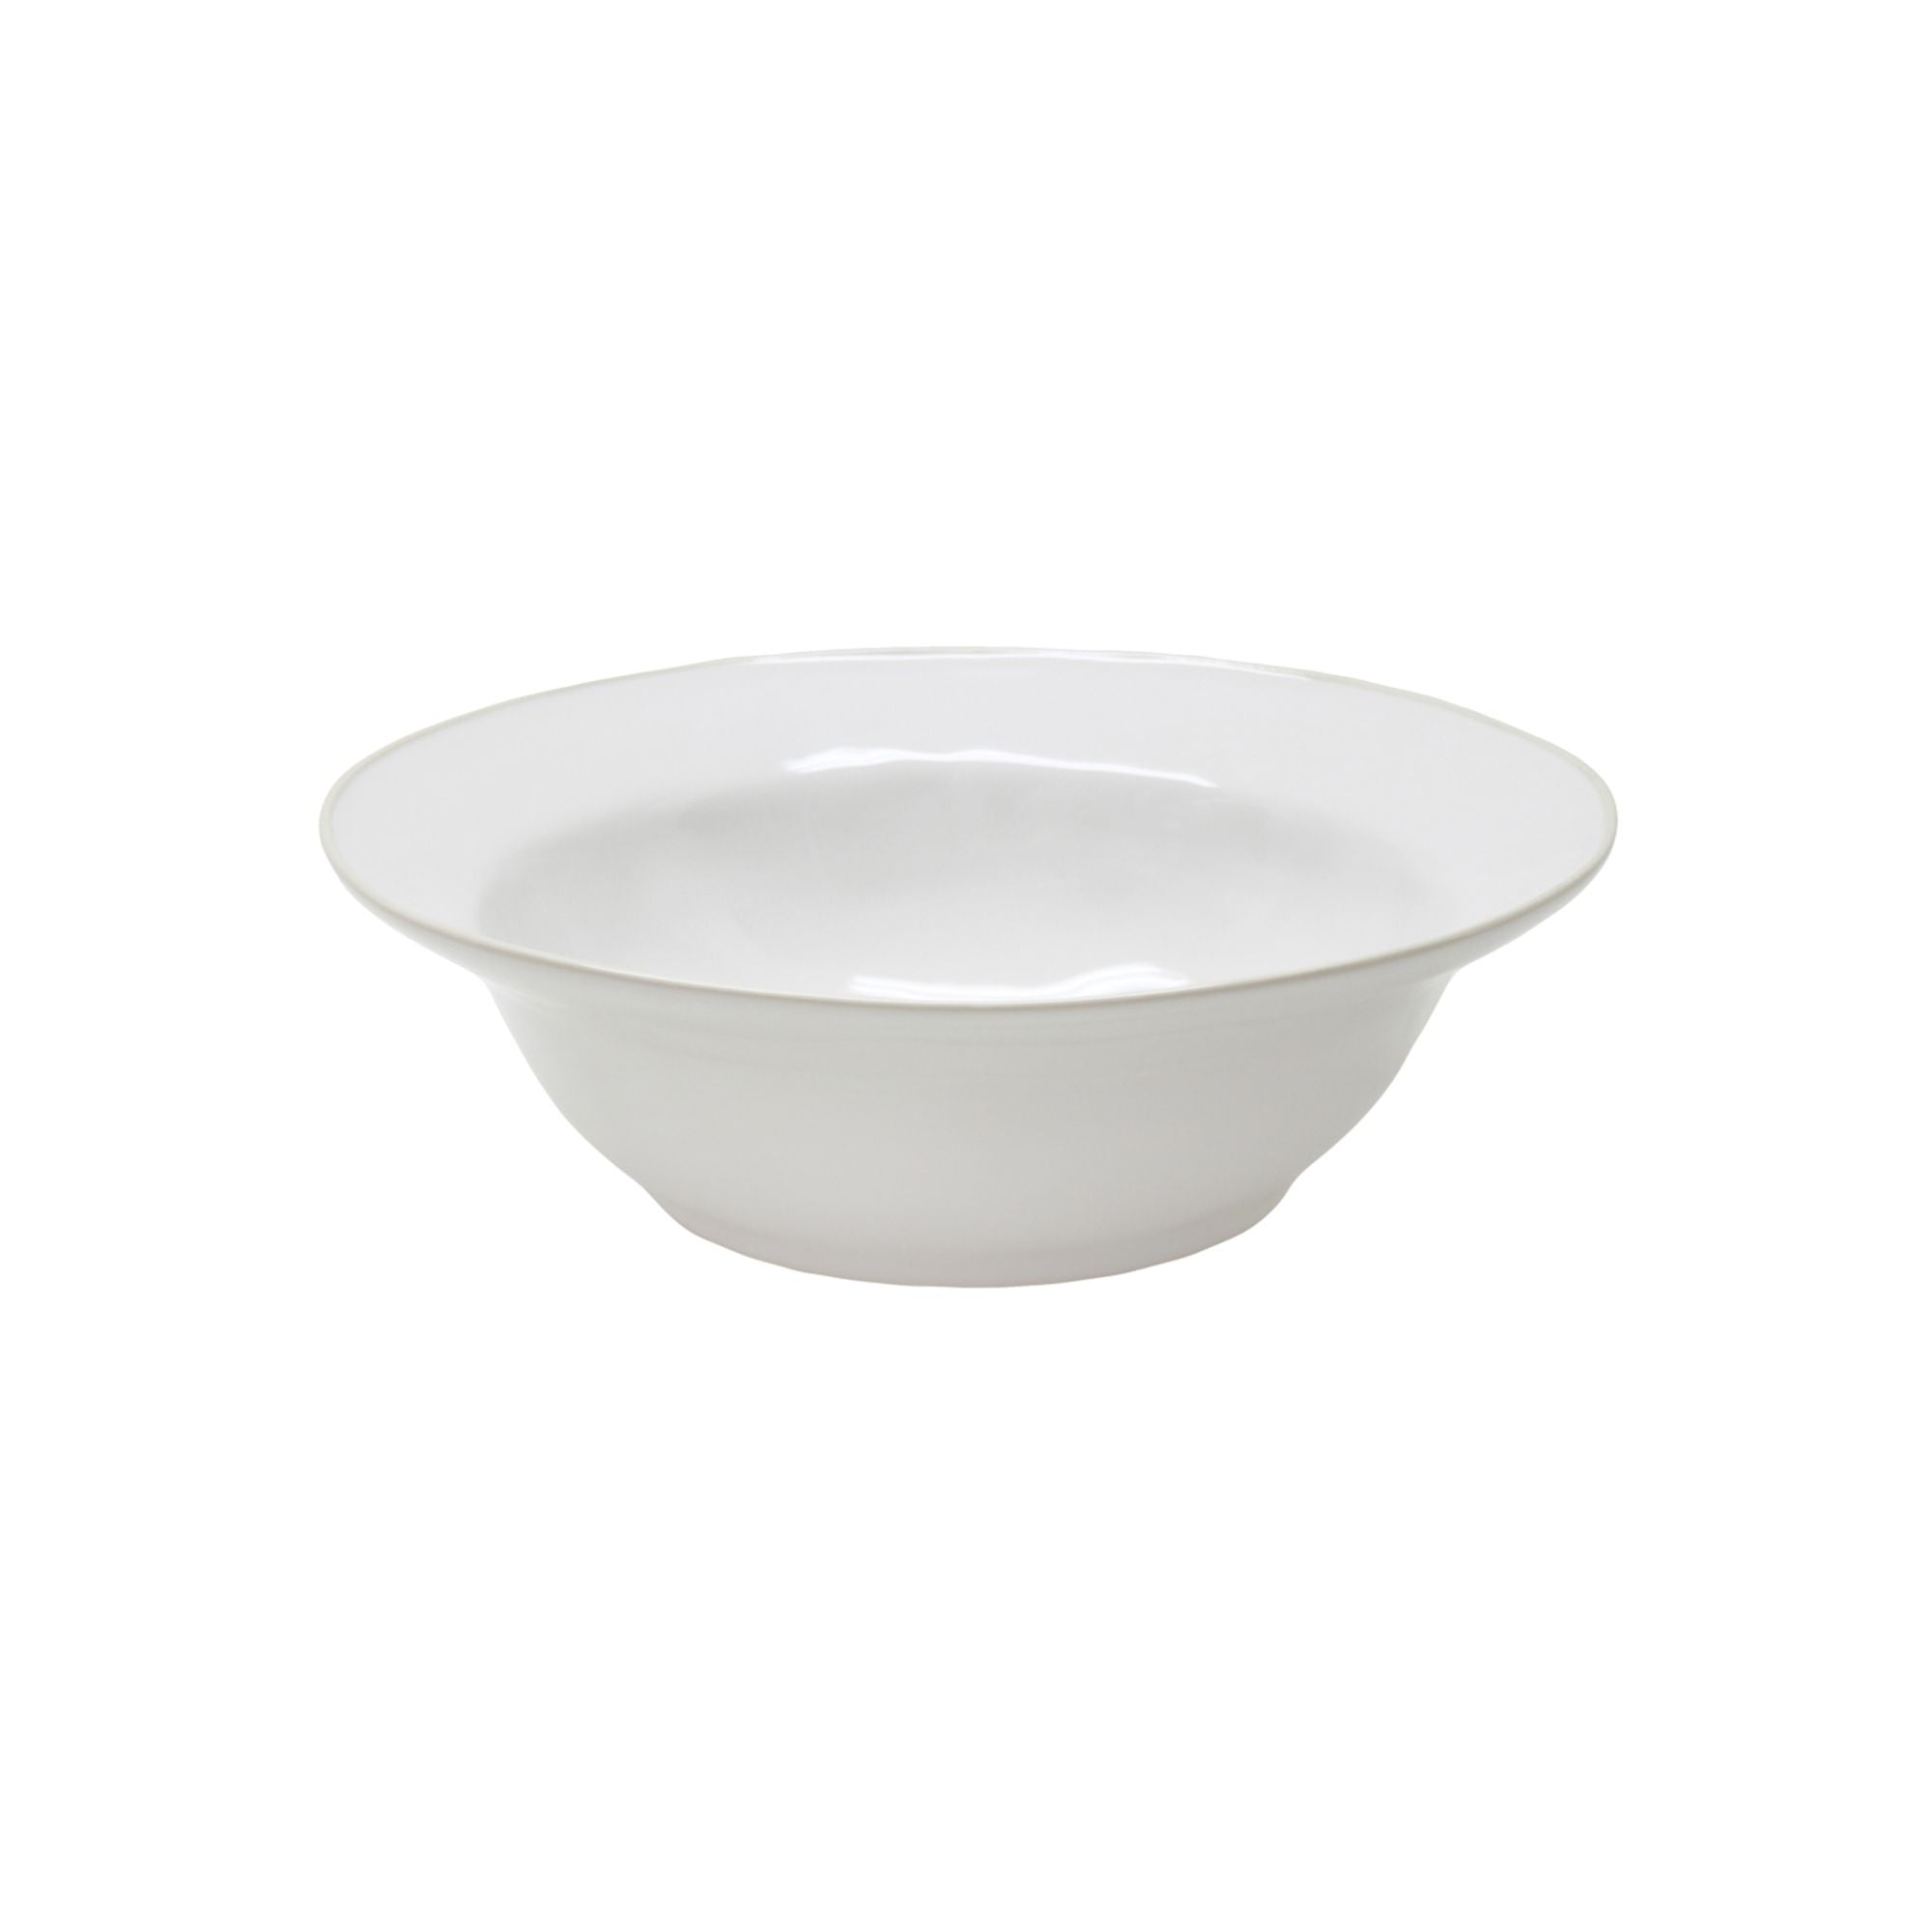 Beja Serving Bowl 12" White-Cream